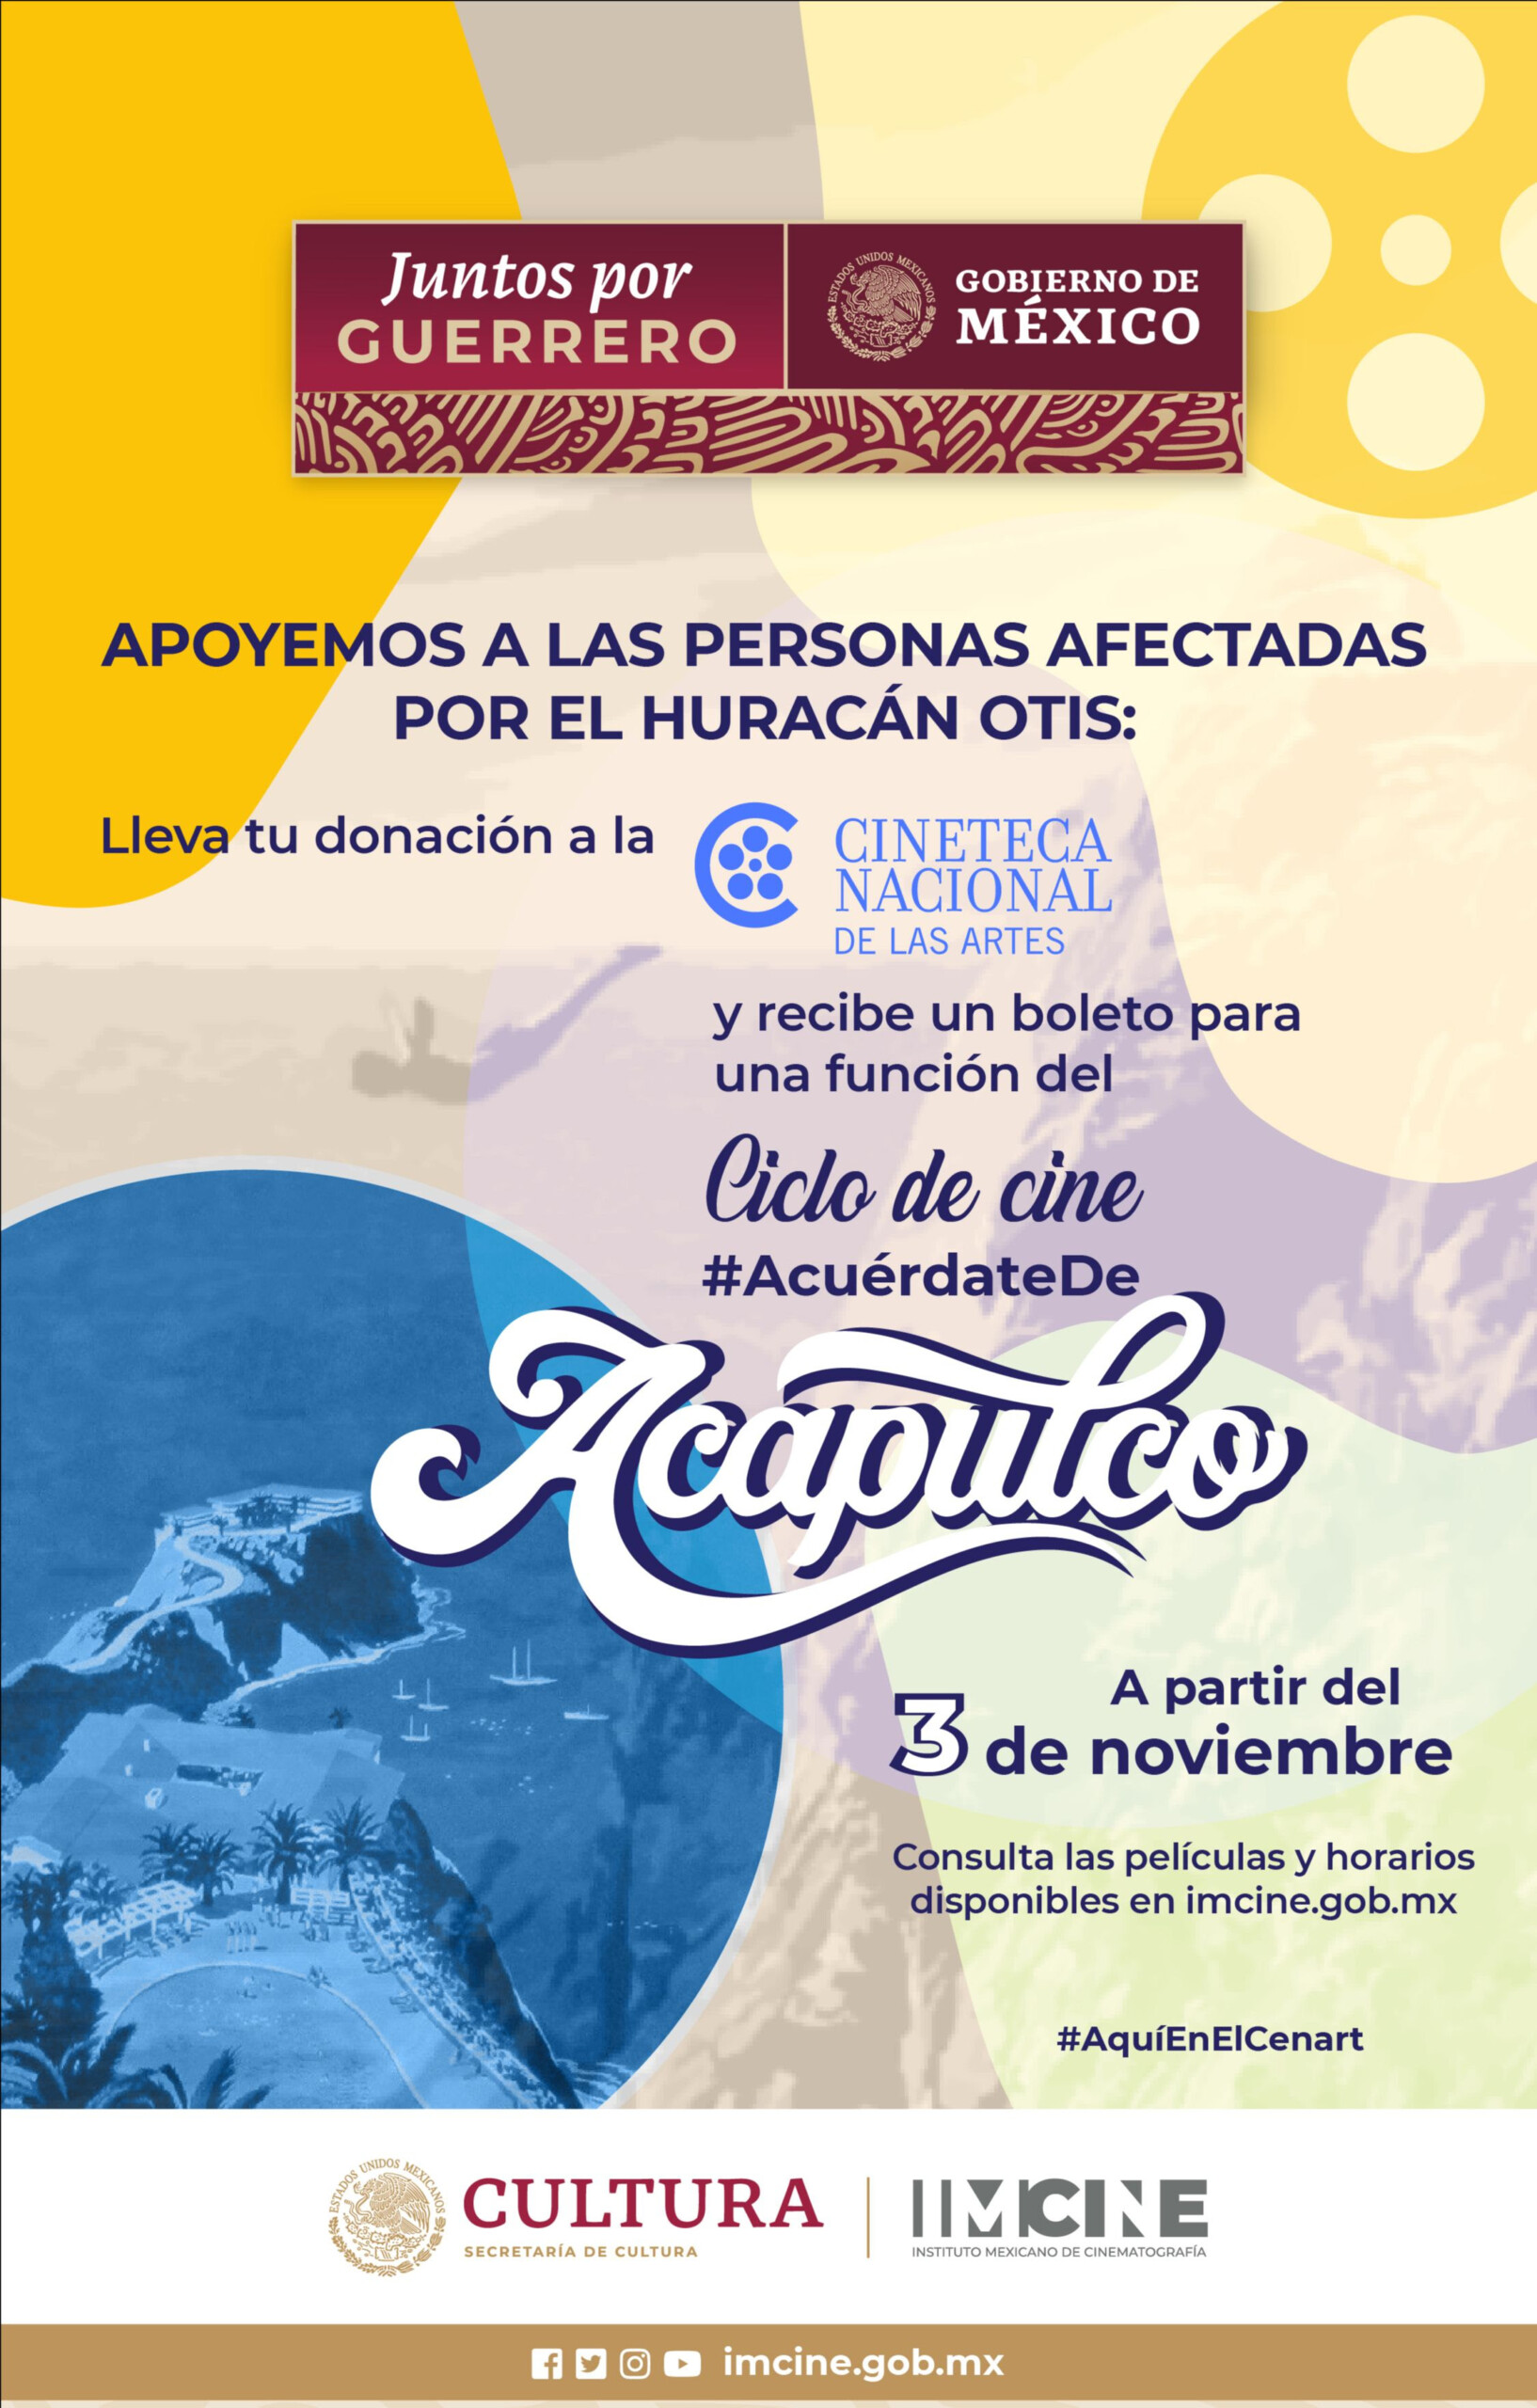 Apoya a Guerrero y ve una película gratis, con el ciclo de cine “Acuérdate de Acapulco”